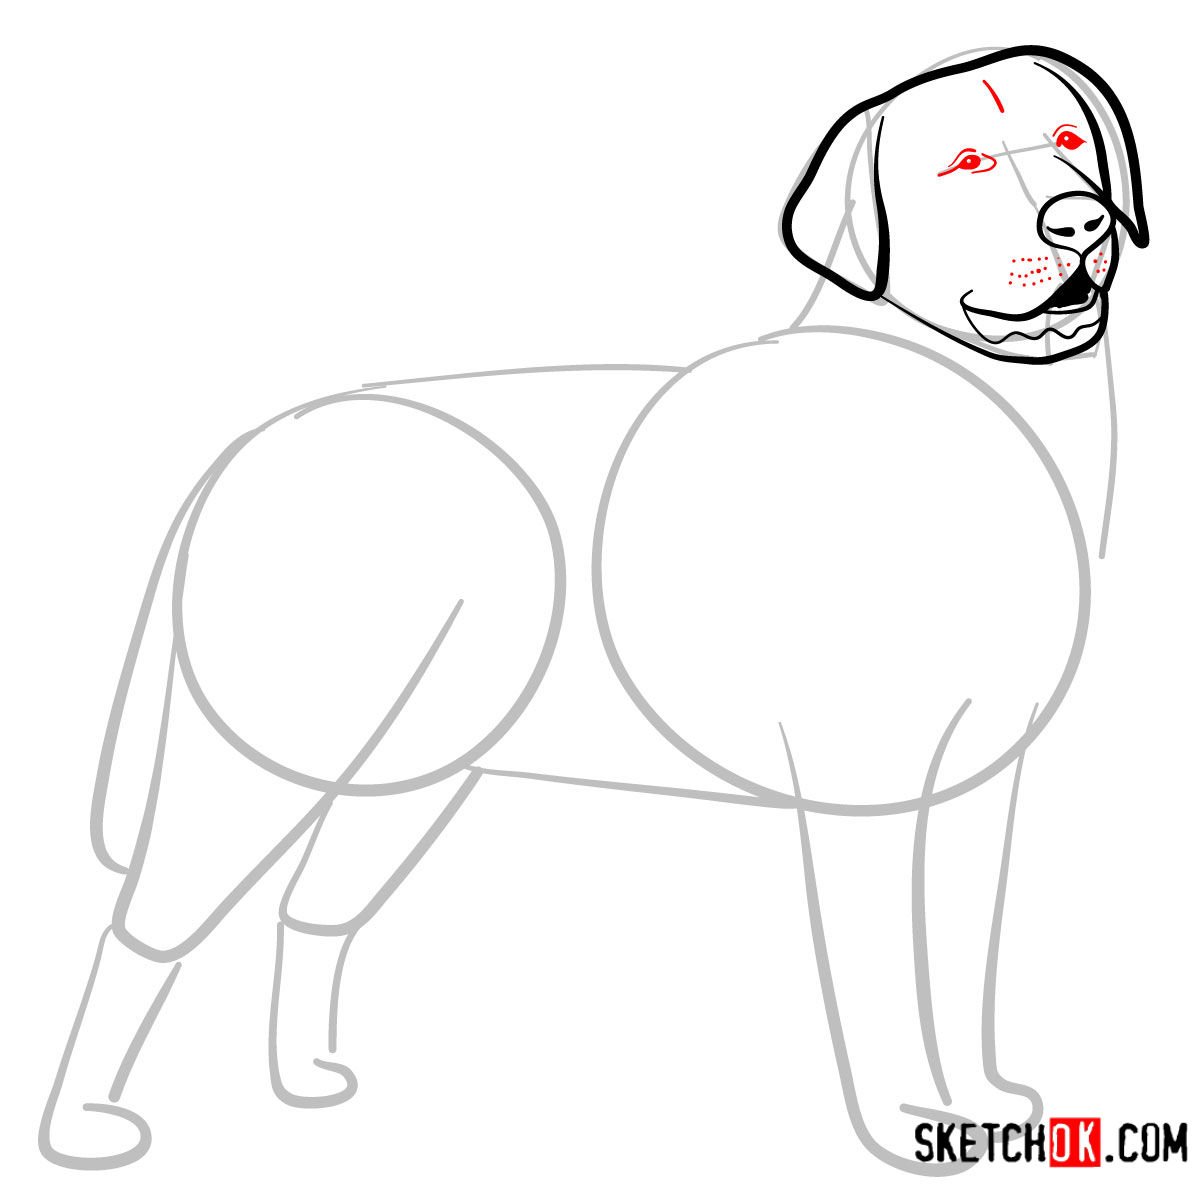 How to draw the Labrador Retriever dog - step 05